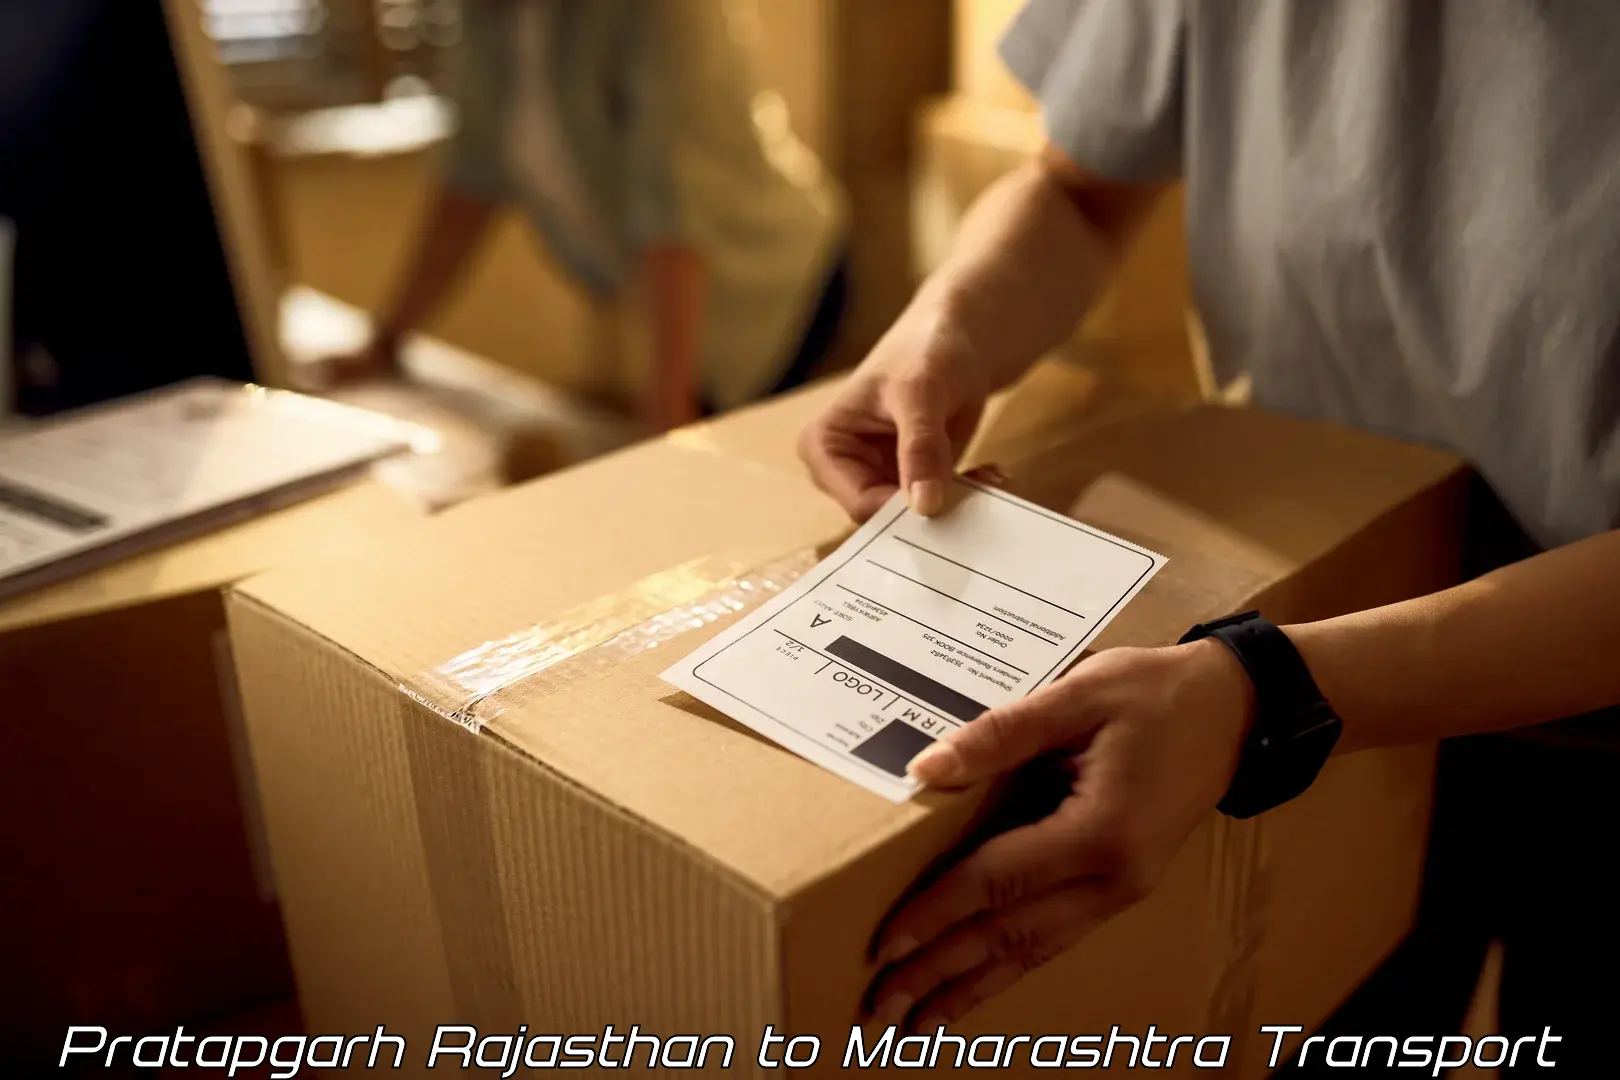 Bike shipping service Pratapgarh Rajasthan to Lonar